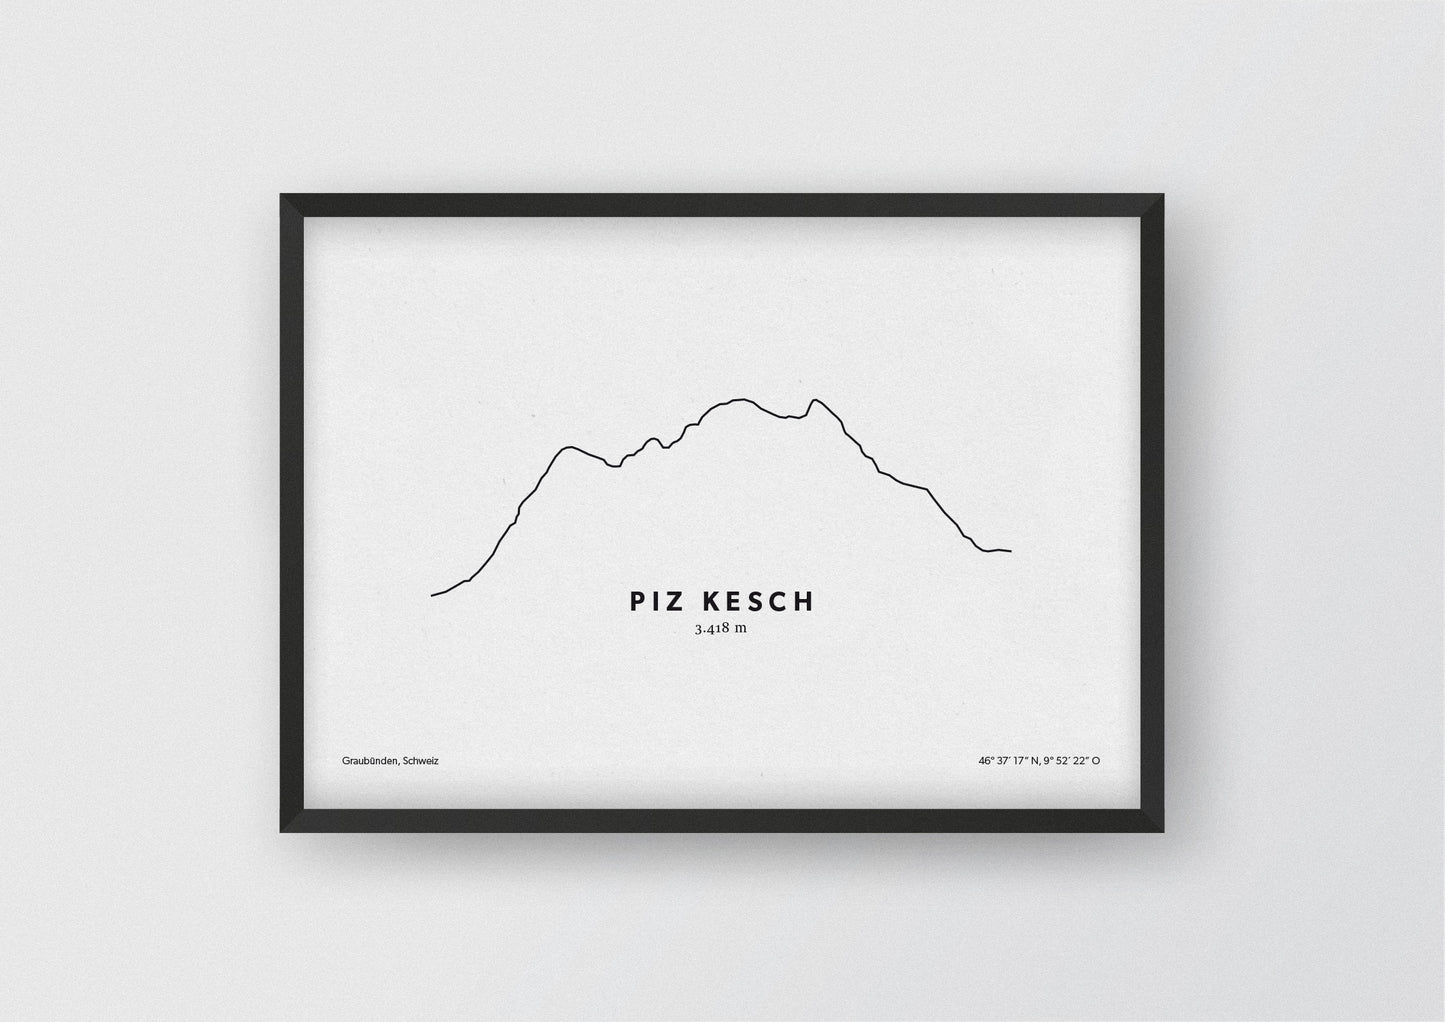 Minimalistische Illustration des Piz Kesch, dem höchsten Berg der Albula-Alpen, als stilvoller Einrichtungsgegenstand für Zuhause.